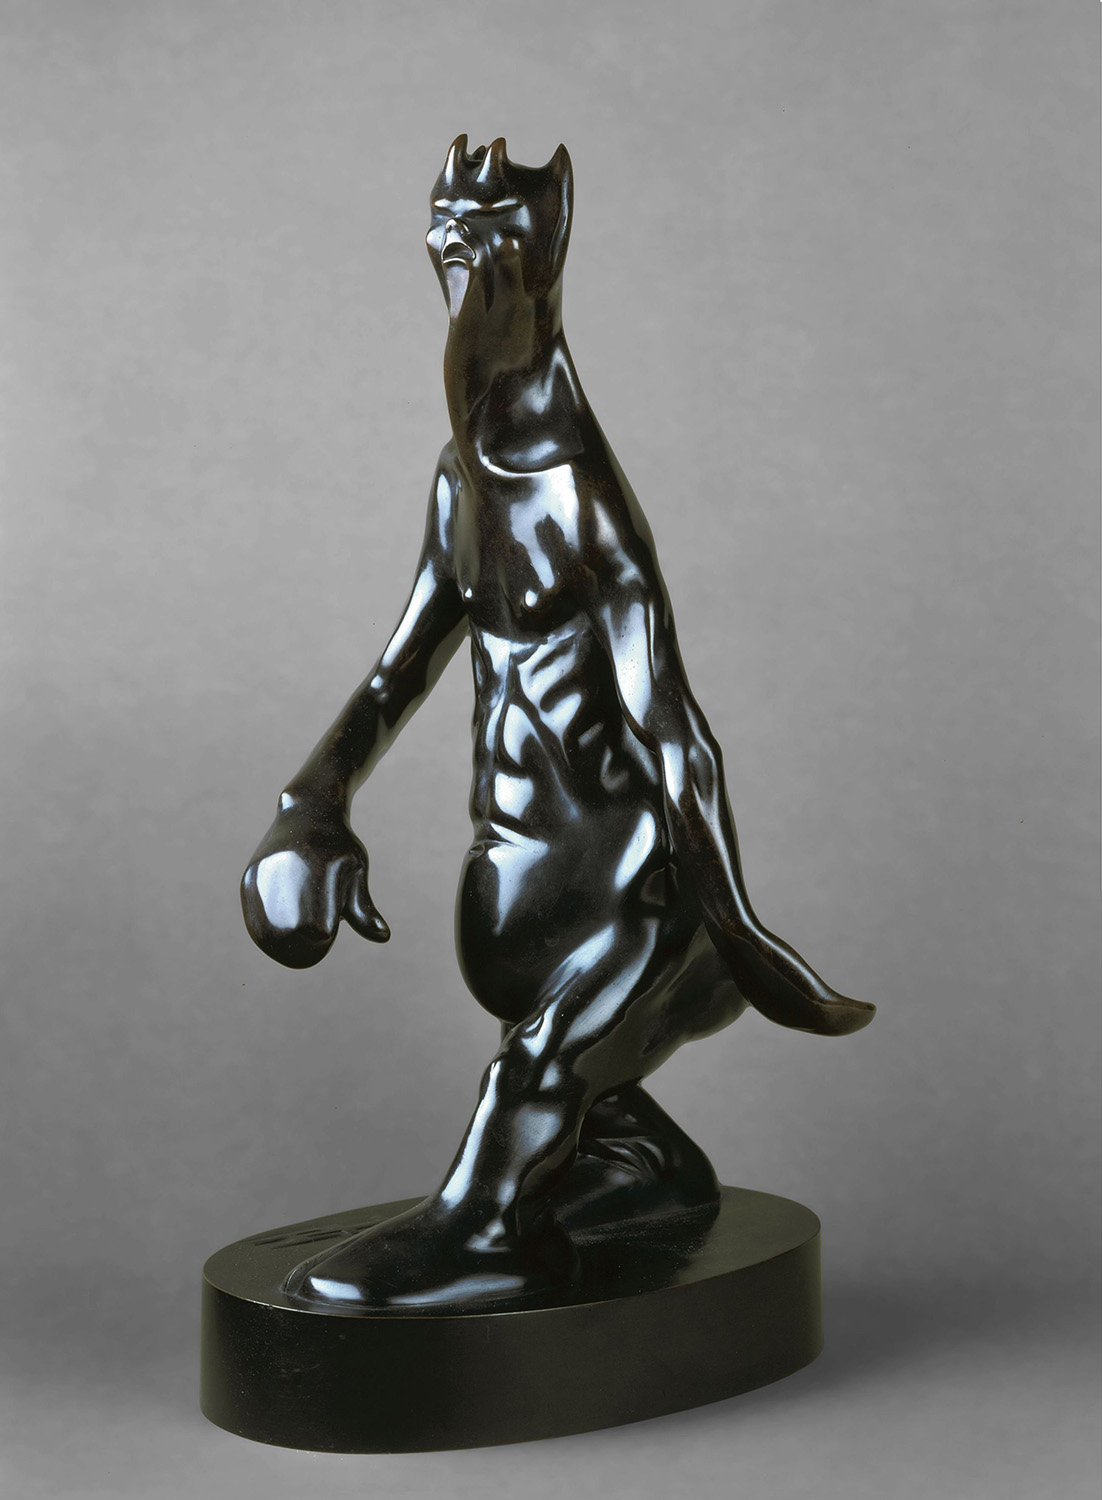 Skulptur des Teufels aus Bronze mit langgezogenem Oberkörper und hangendem Bauch, nicht detailliert ausgeführte Hände